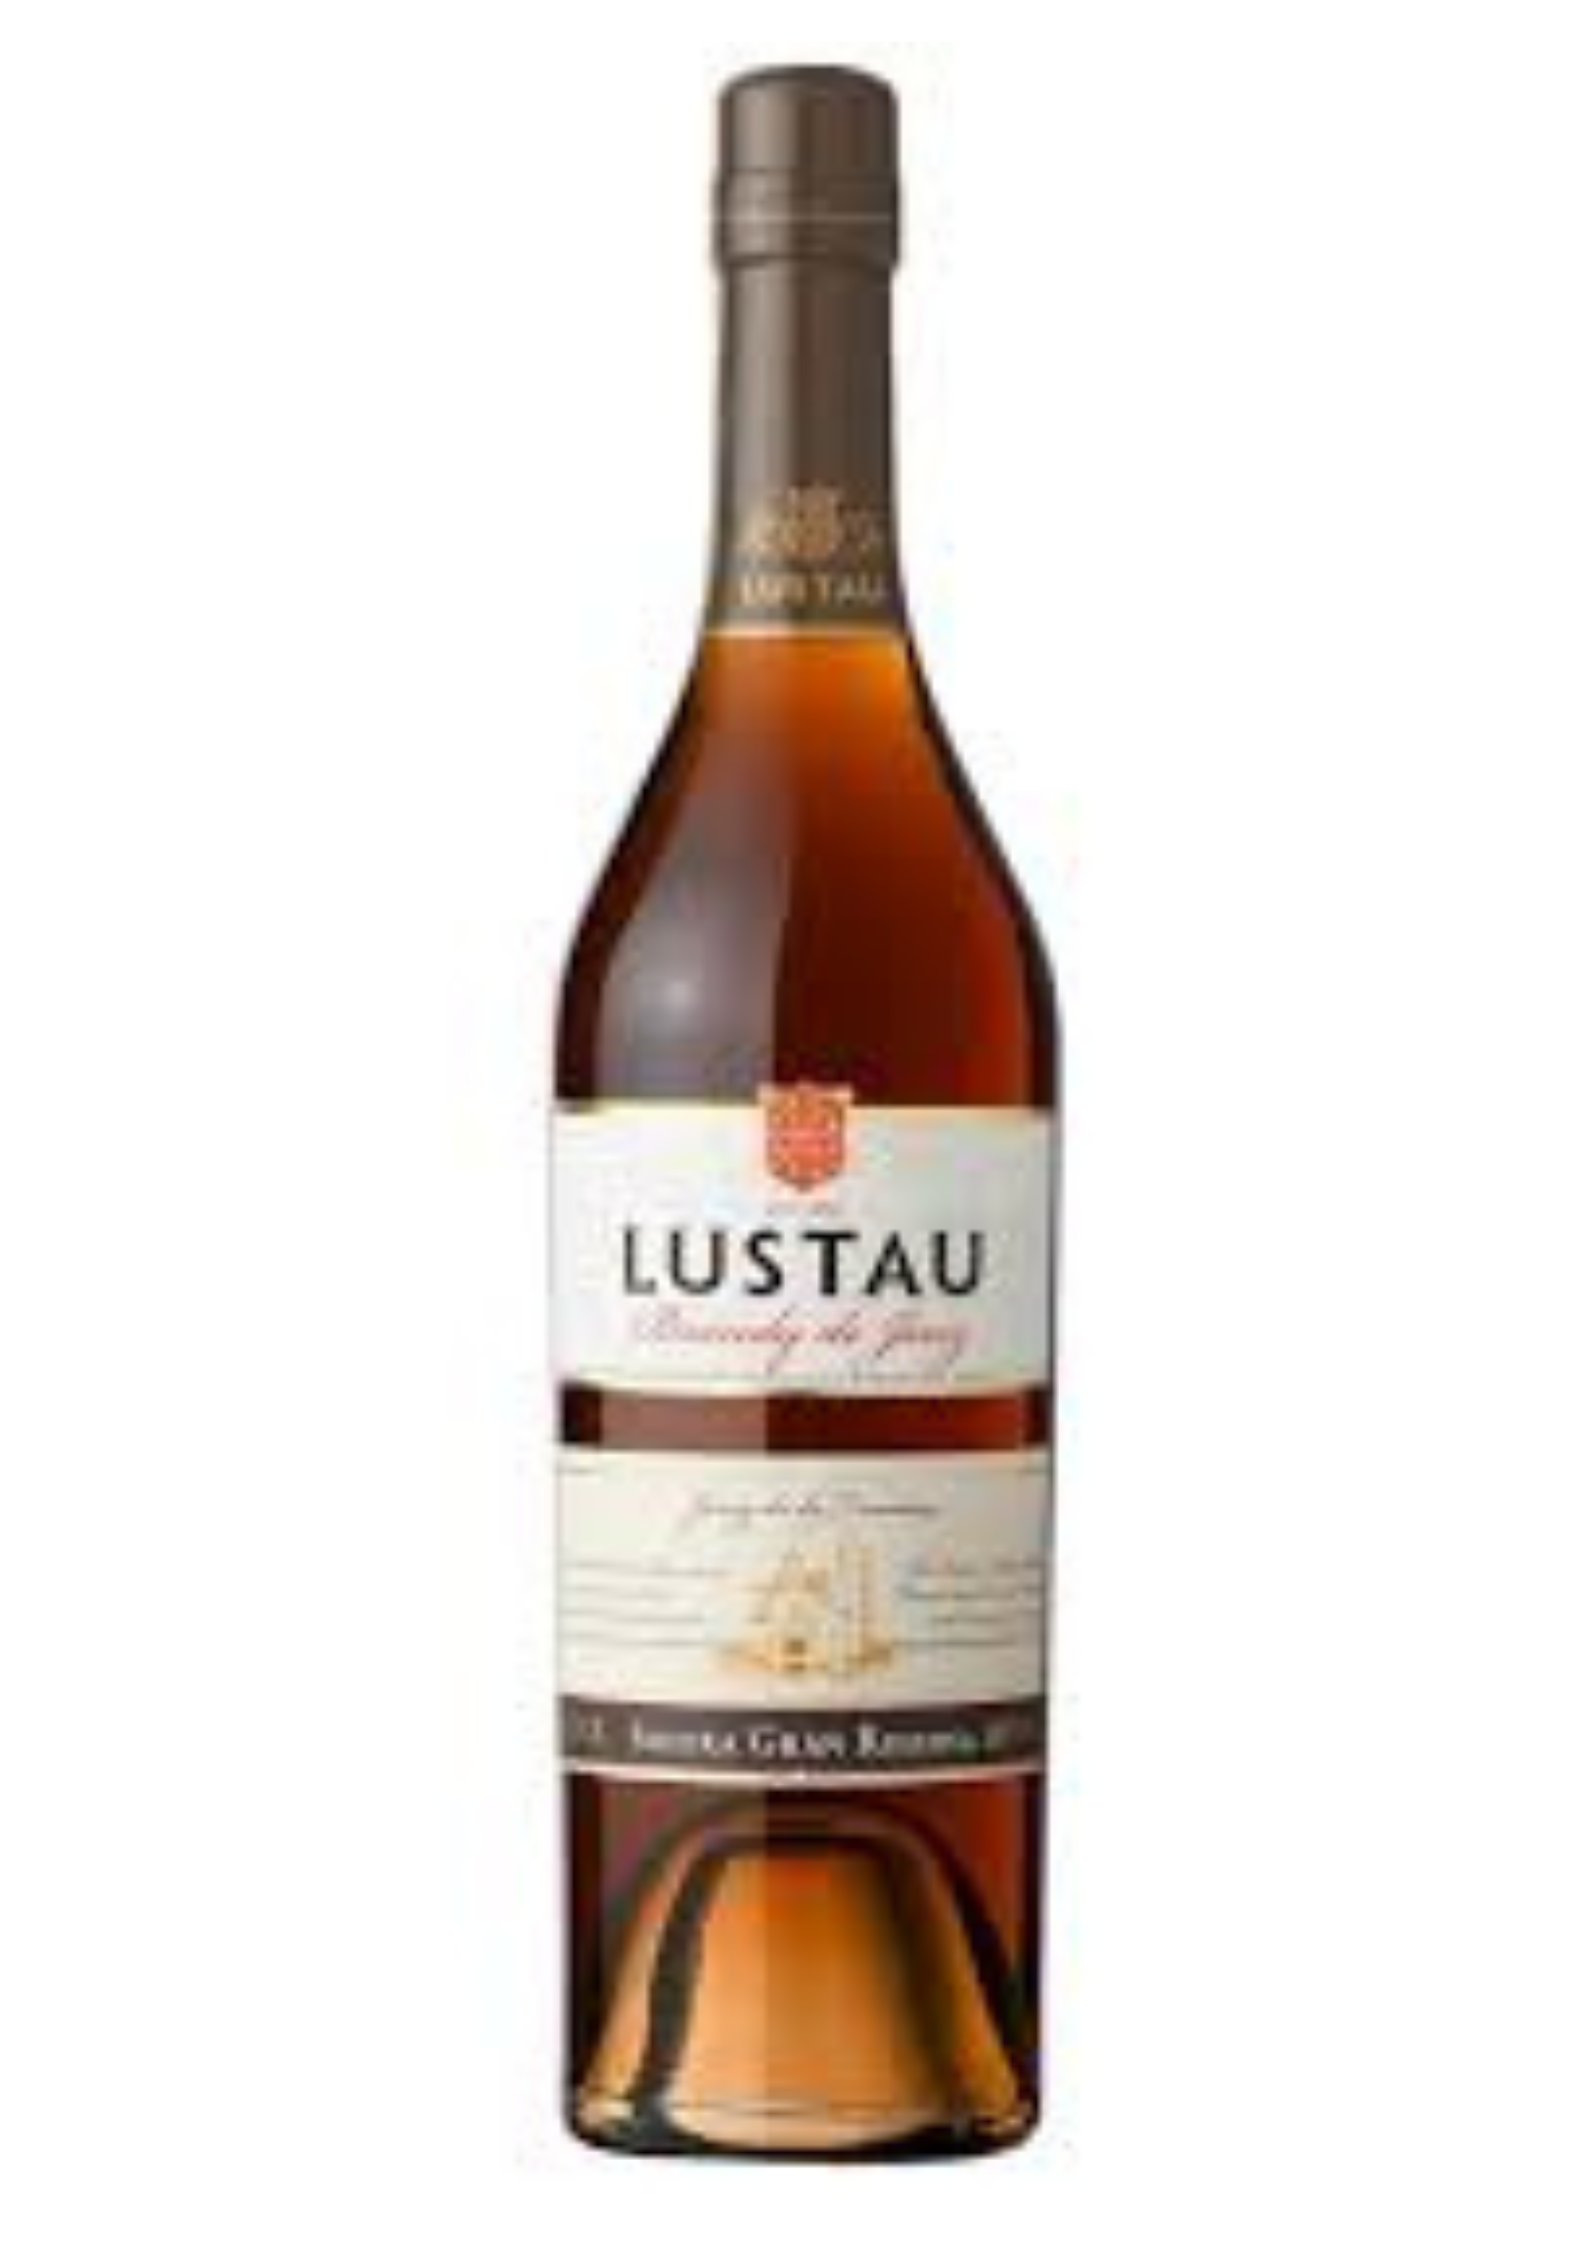 Bottle of Bodegas Lustau Solera Reserva Brandy, 40% - The Spirits Room